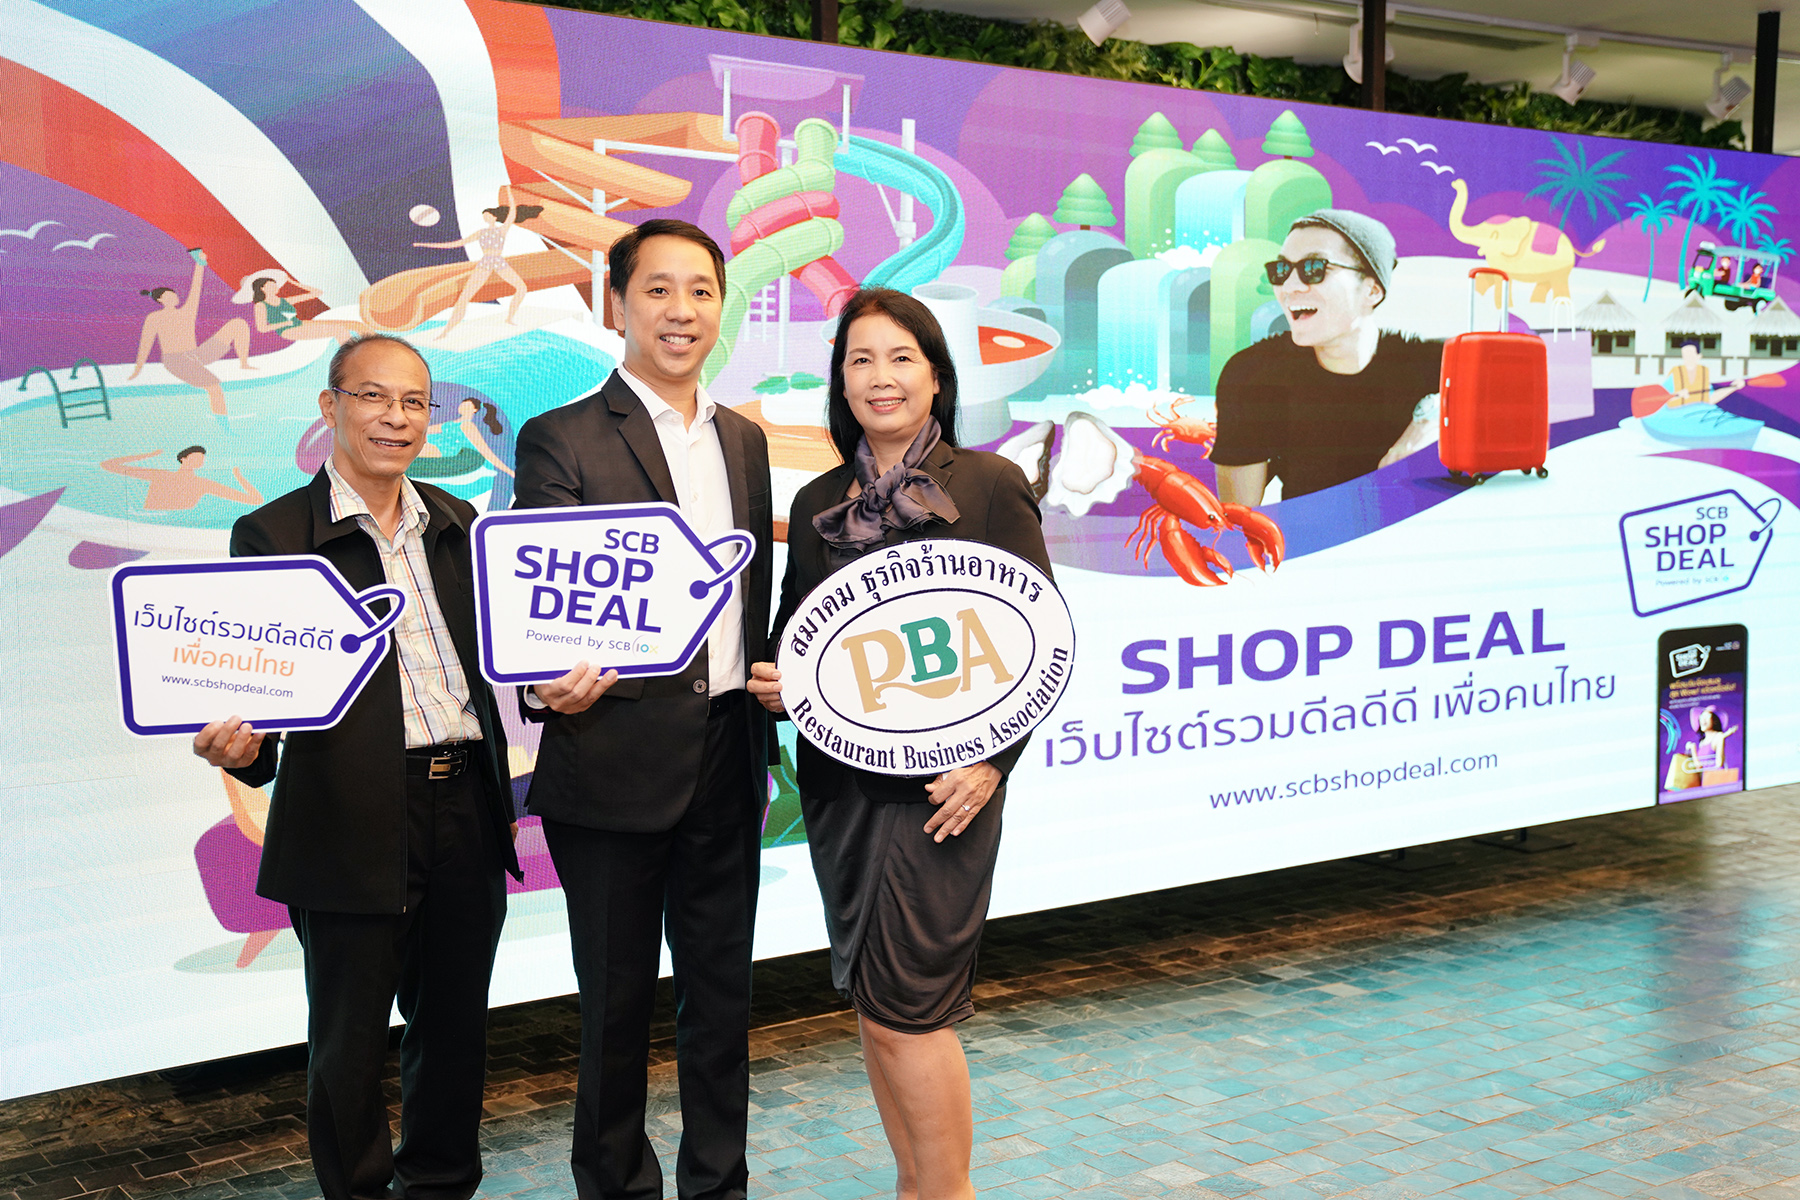 ไทยพาณิชย์ จับมือ สมาคมธุรกิจร้านอาหาร พลิกฟื้นรายได้ผู้ประกอบการทั่วไทย หนุนใช้ช่องทางขายออนไลน์ ดีลส่วนลดบนแพลตฟอร์ม www.SCBShopDeal.com